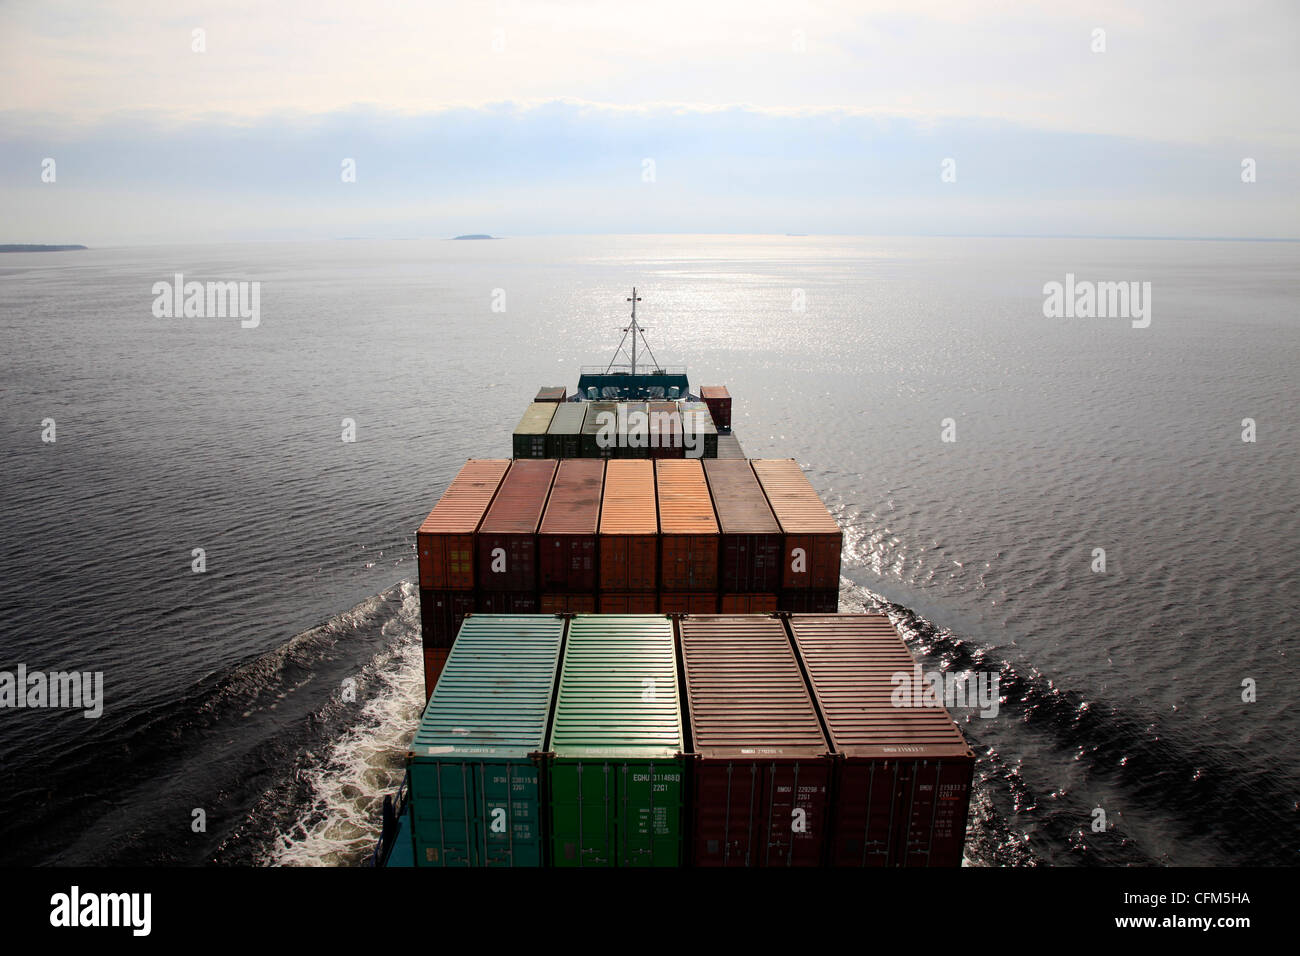 Container ship, Baltic Sea, Sweden, Scandinavia, Europe Stock Photo